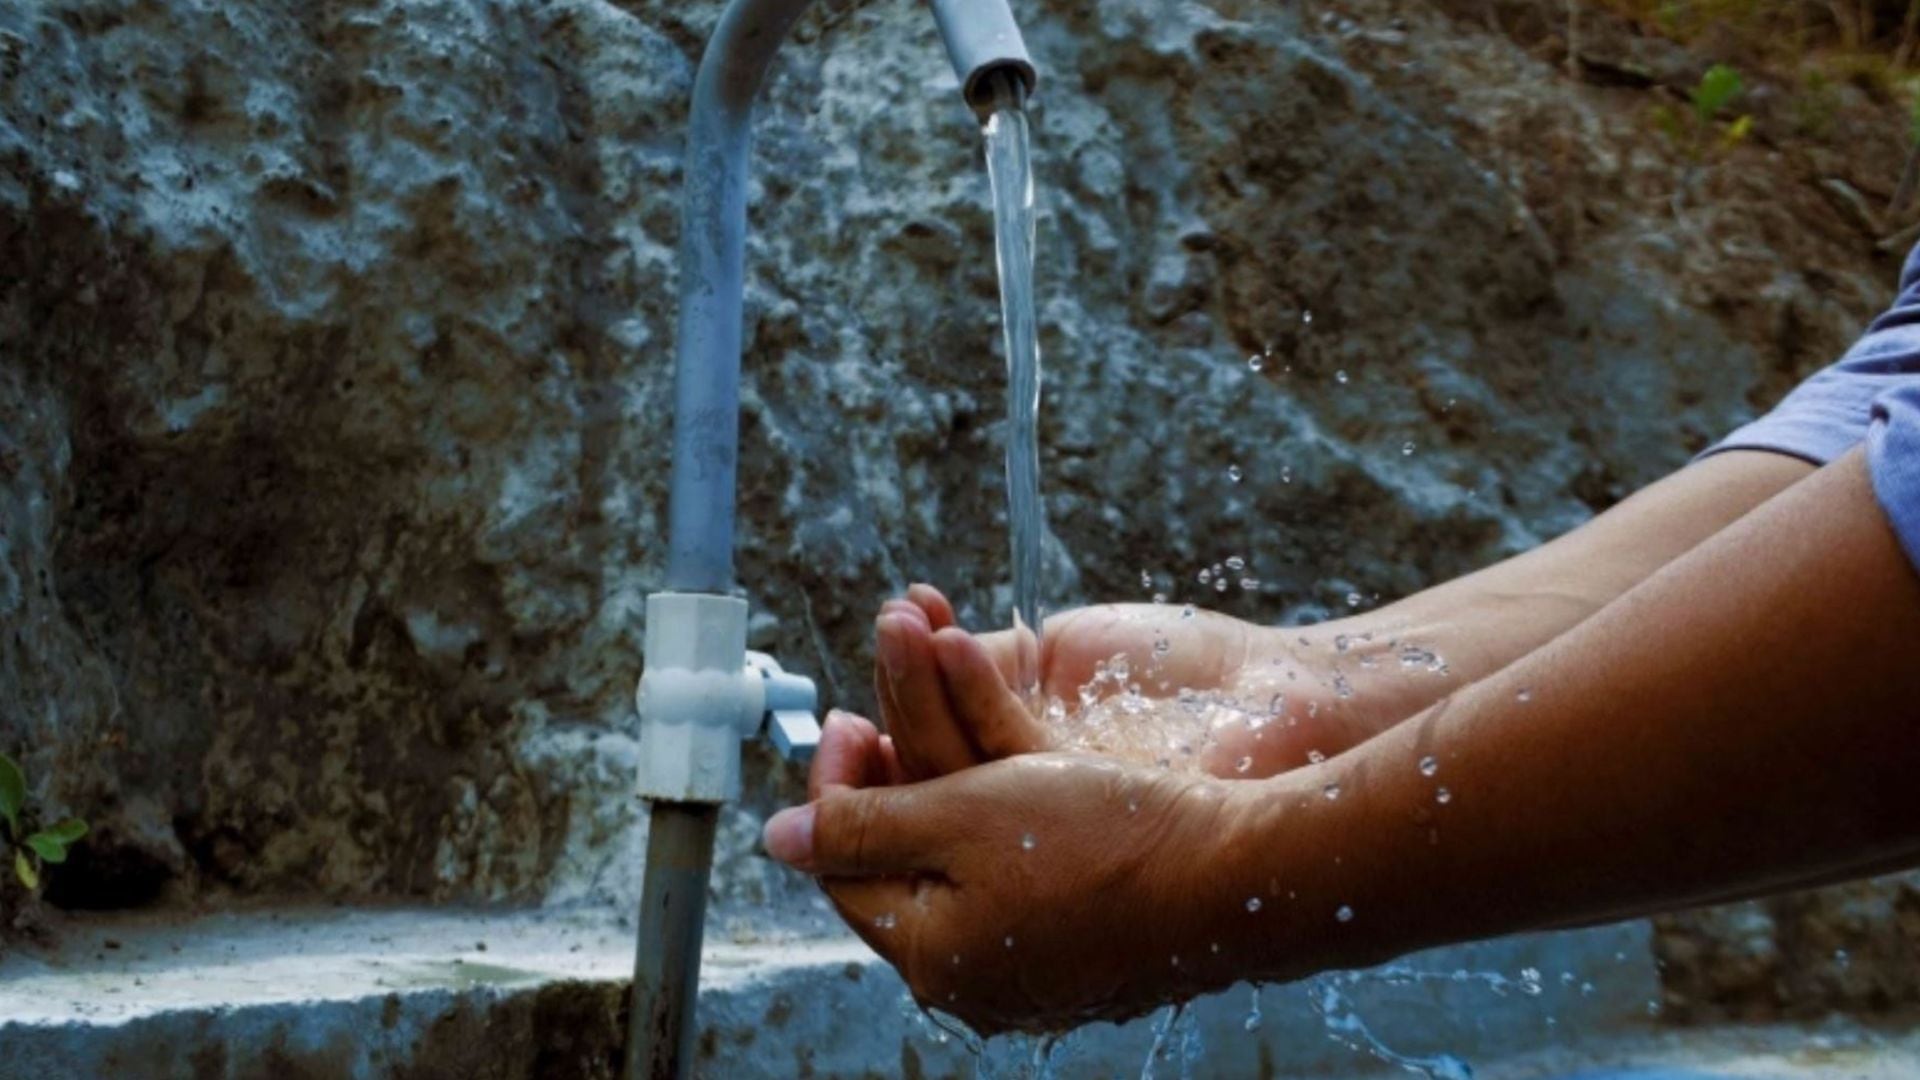 A nivel global, la demanda de agua se ha duplicado desde 1960, y el reporte prevé que esa presión aumente entre un 20% y un 25% más hasta 2050 (Andina)